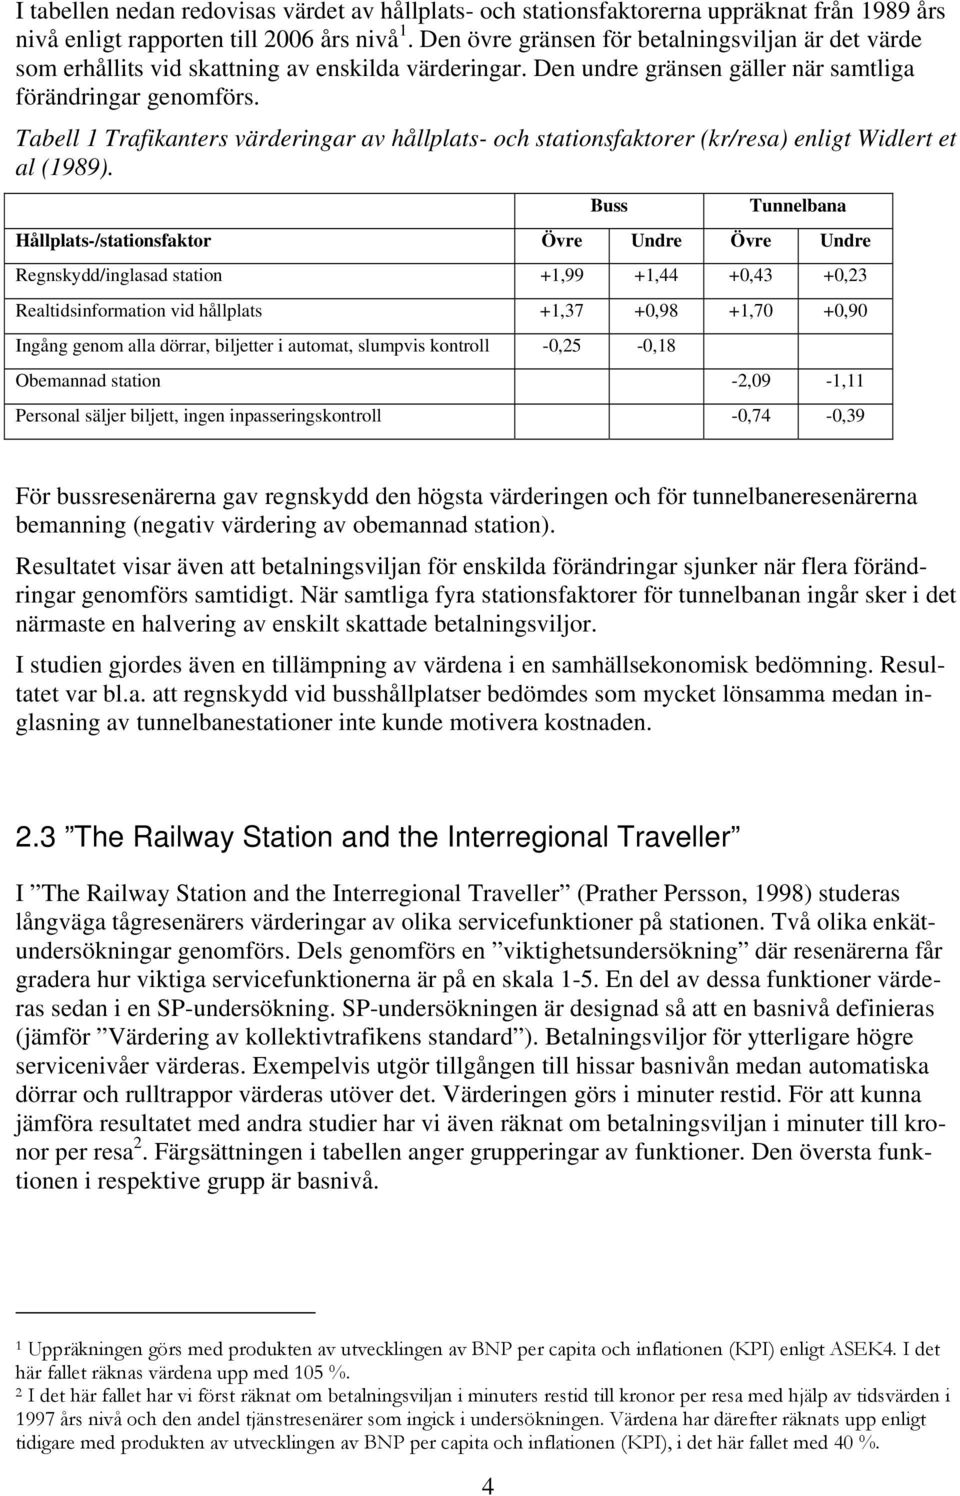 Tabell 1 Trafikanters värderingar av hållplats- och stationsfaktorer (kr/resa) enligt Widlert et al (1989).